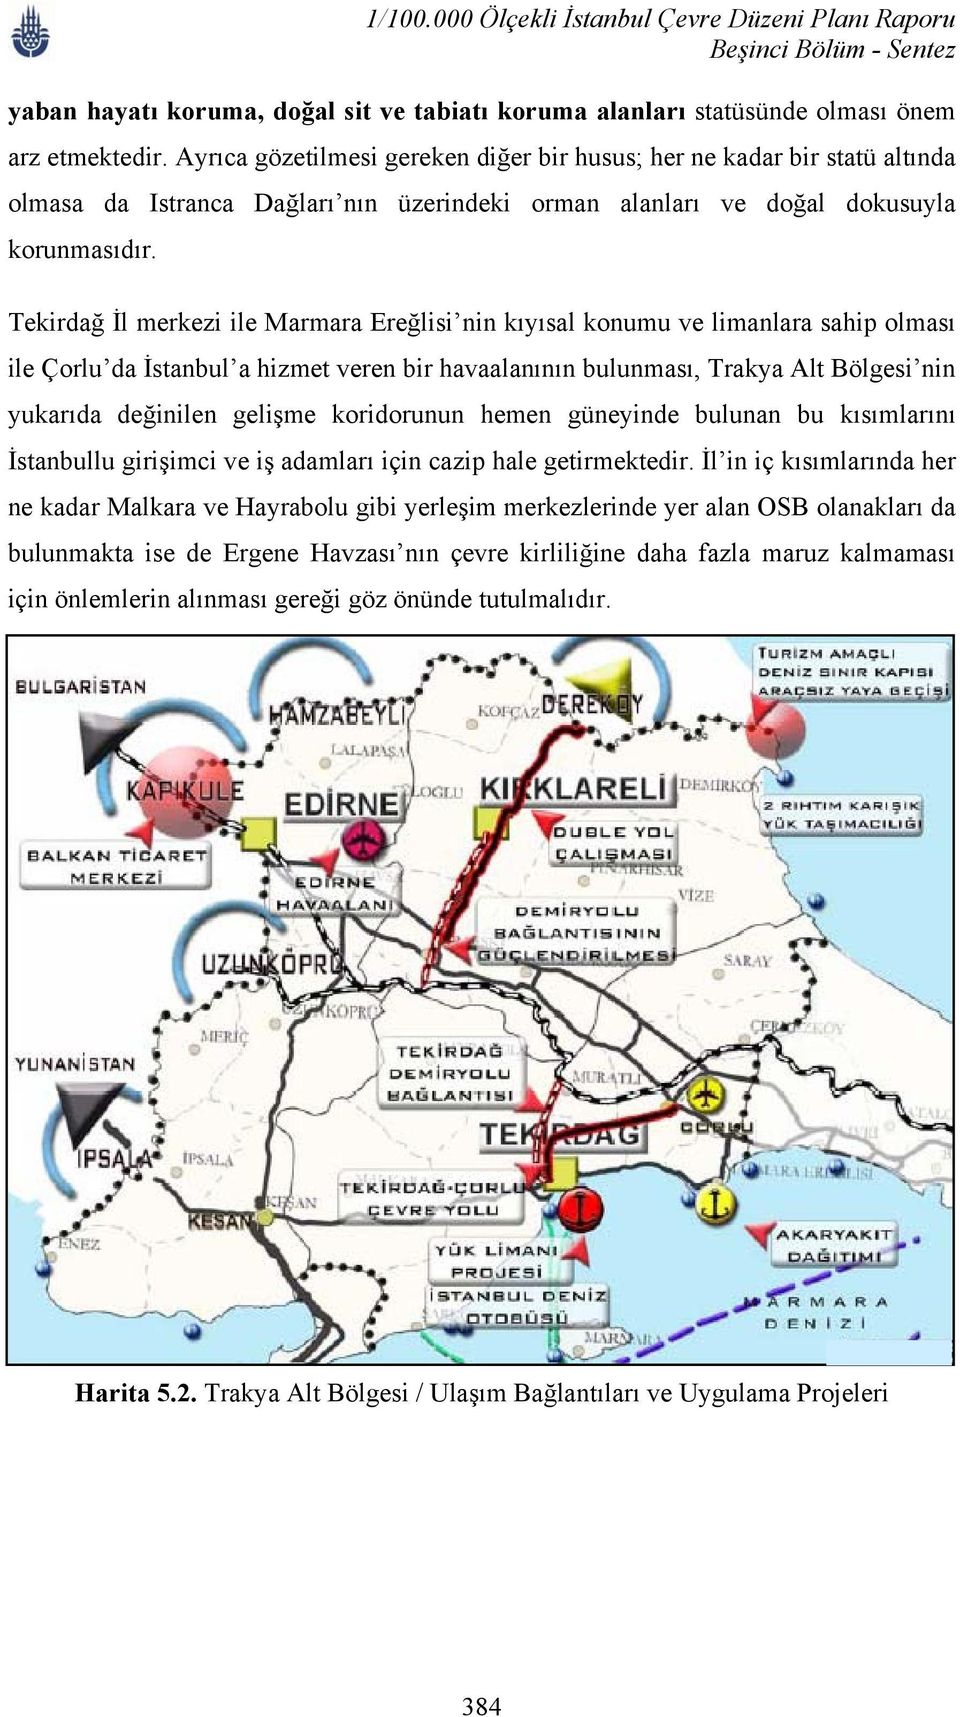 Tekirdağ İl merkezi ile Marmara Ereğlisi nin kıyısal konumu ve limanlara sahip olması ile Çorlu da İstanbul a hizmet veren bir havaalanının bulunması, Trakya Alt Bölgesi nin yukarıda değinilen